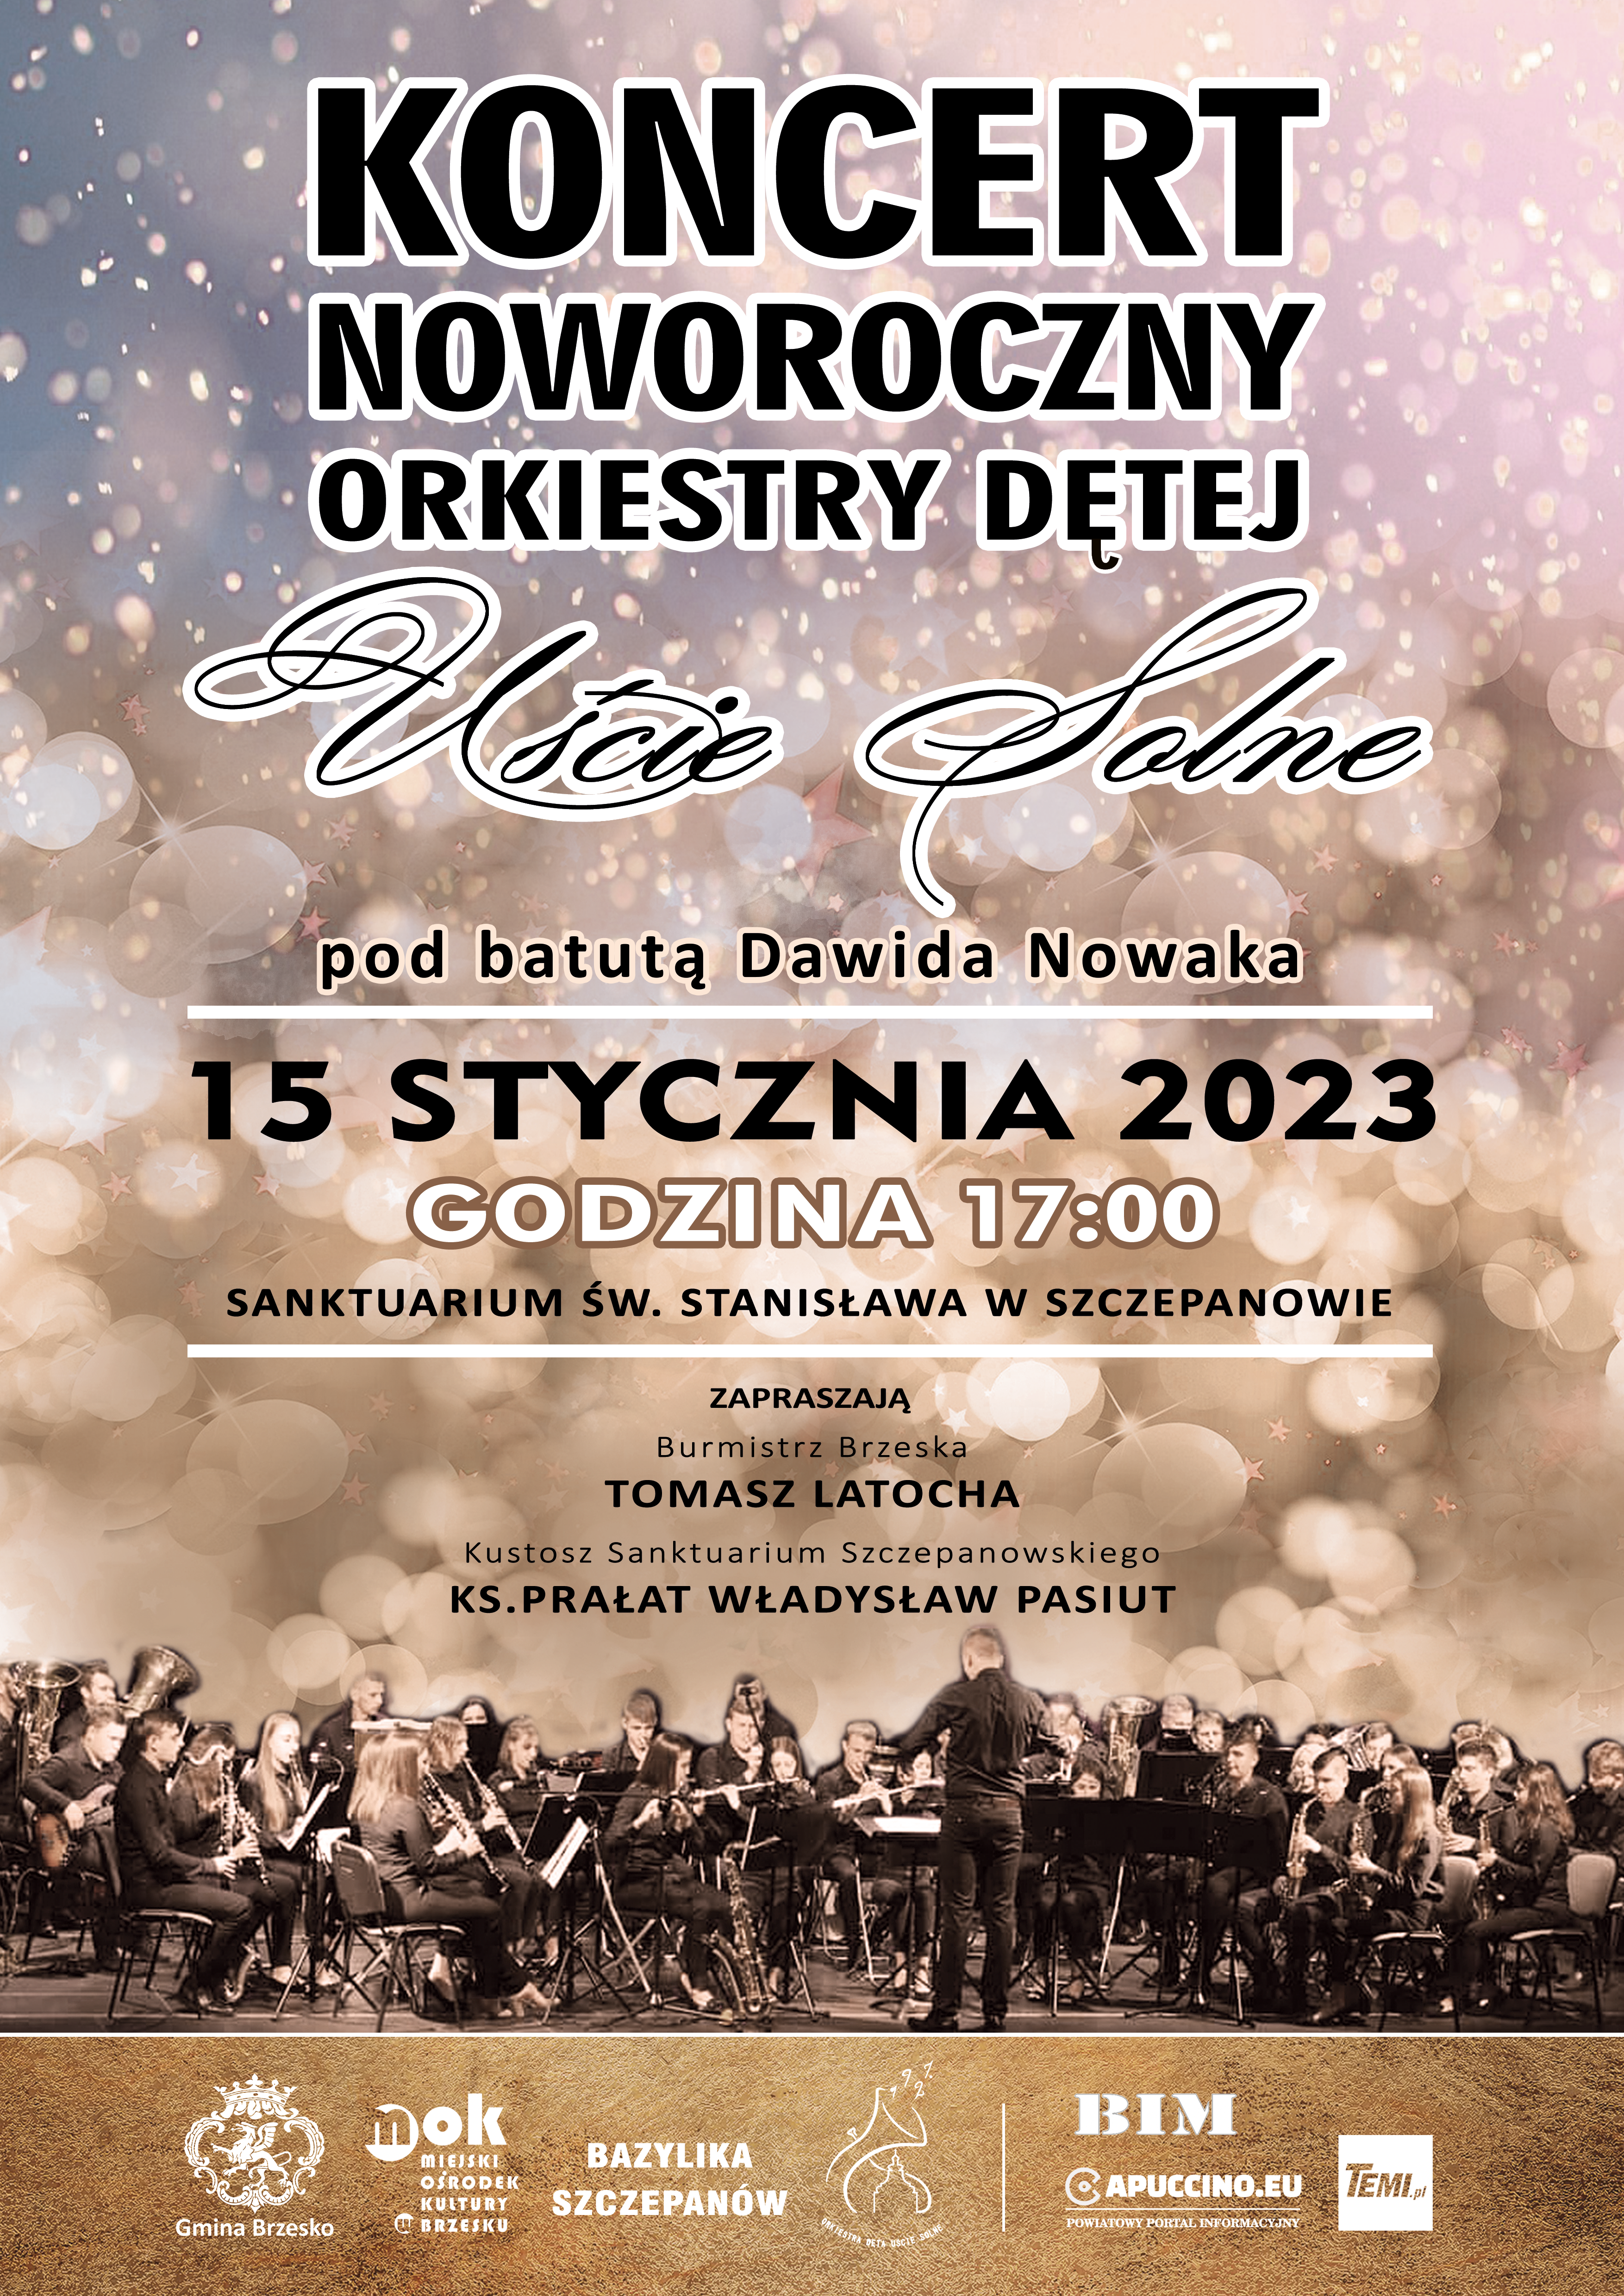 Koncert Noworoczny Orkiestry Dętej Uście Solne – 15 stycznia 2023